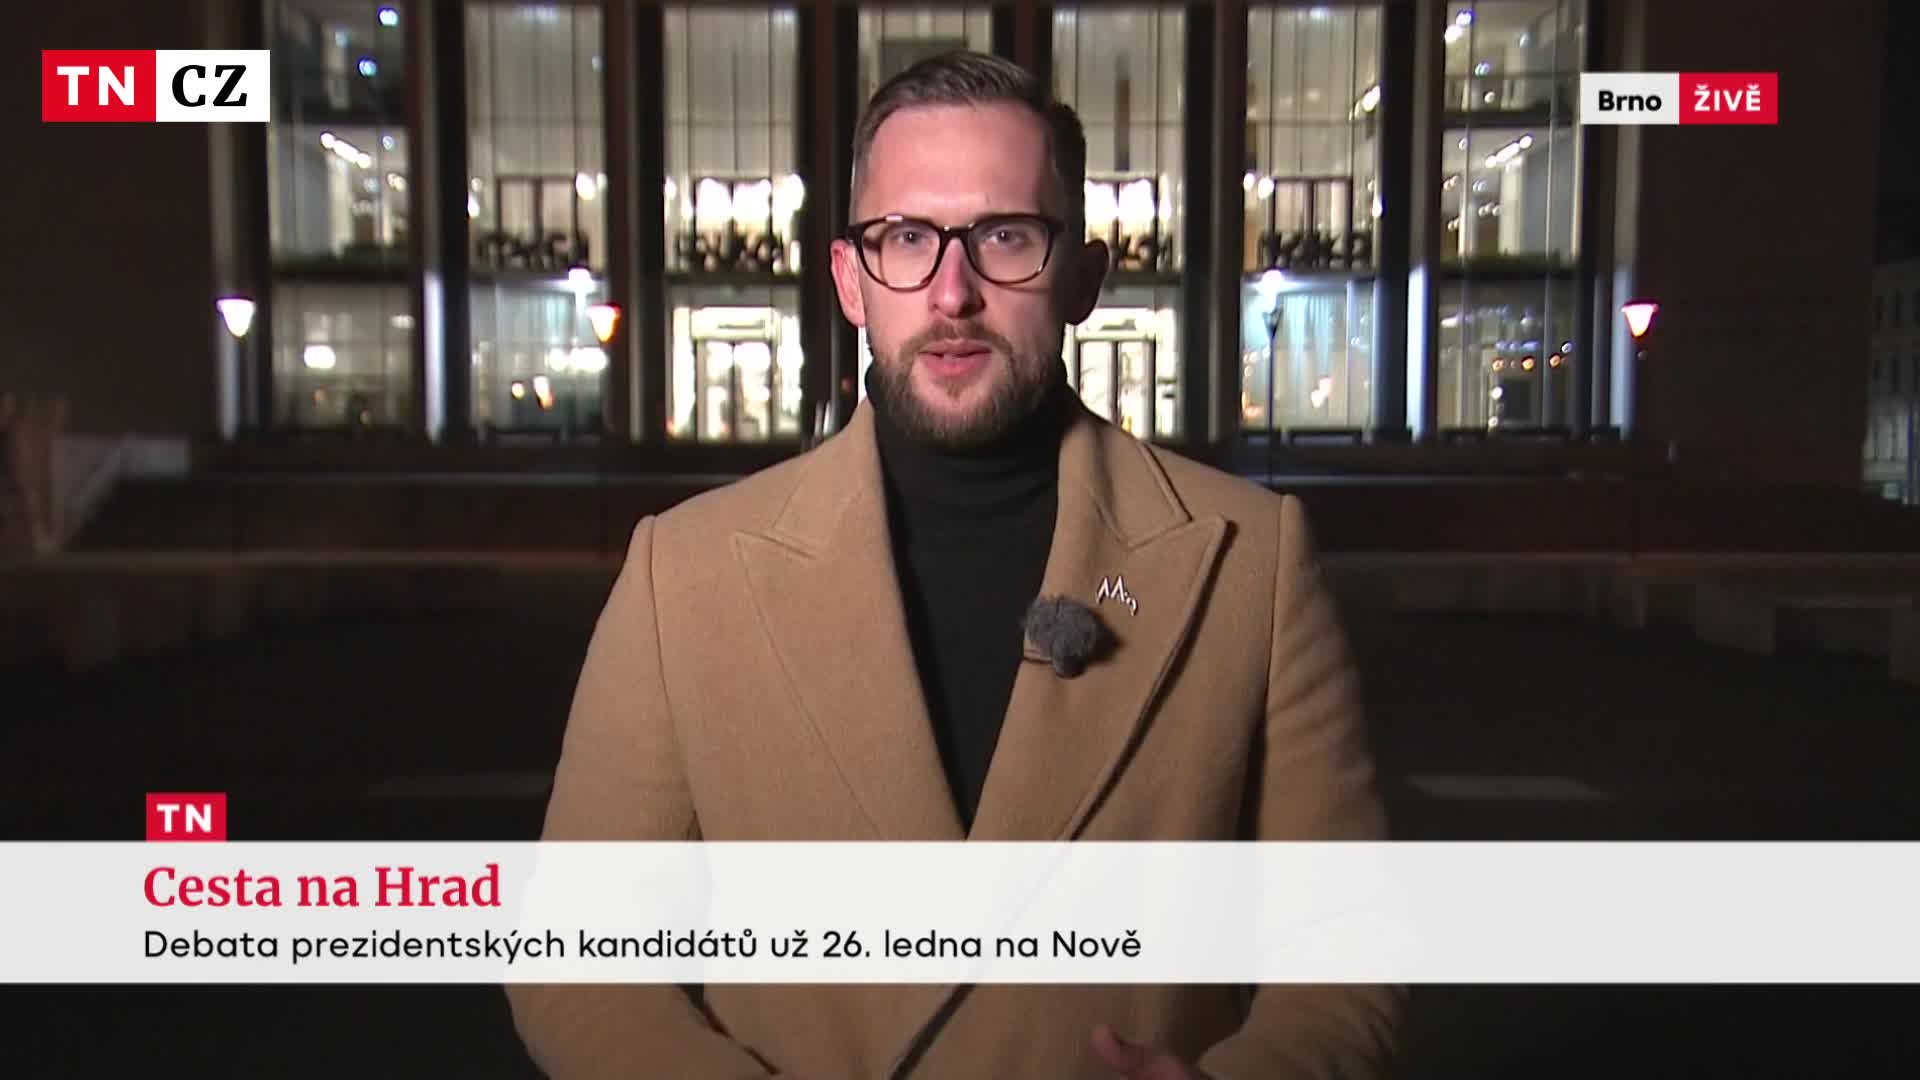 Štáby TV Nova zjišťovaly, co mají kandidáti na programu o víkendu